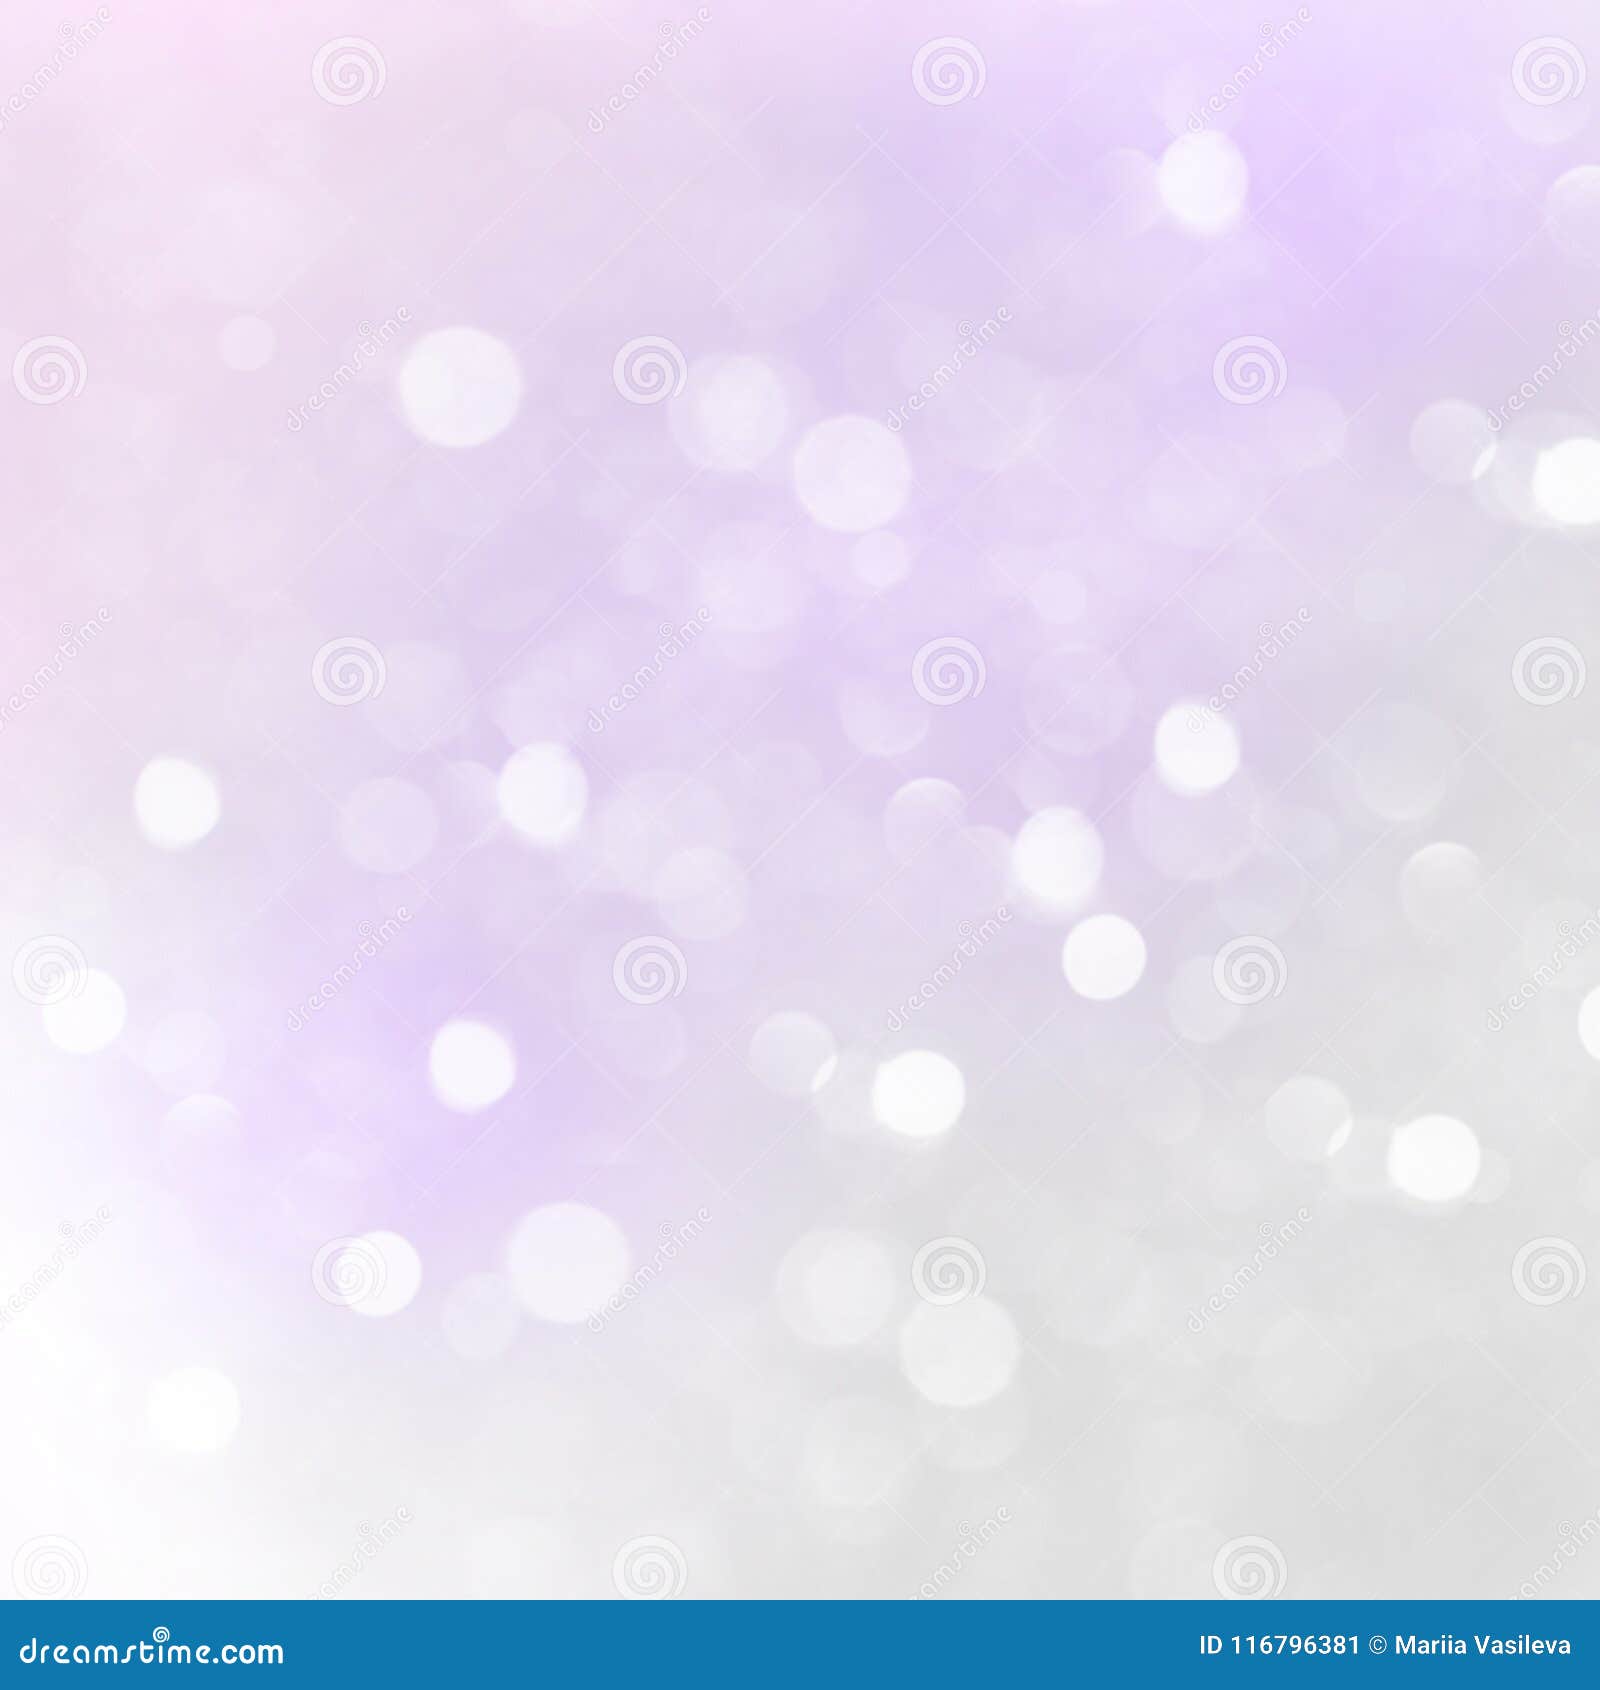 Nền mờ tím nhạt với chấm phấn trắng (Light purple blurred background with white glitter circles): Tông màu tím nhạt với chấm phấn trắng sẽ mang đến cho không gian của bạn sự nhẹ nhàng, tinh tế. Hãy chiêm ngưỡng hình ảnh về nền mờ tím nhạt với chấm phấn trắng để cảm nhận sự thanh lịch của nó nhé!